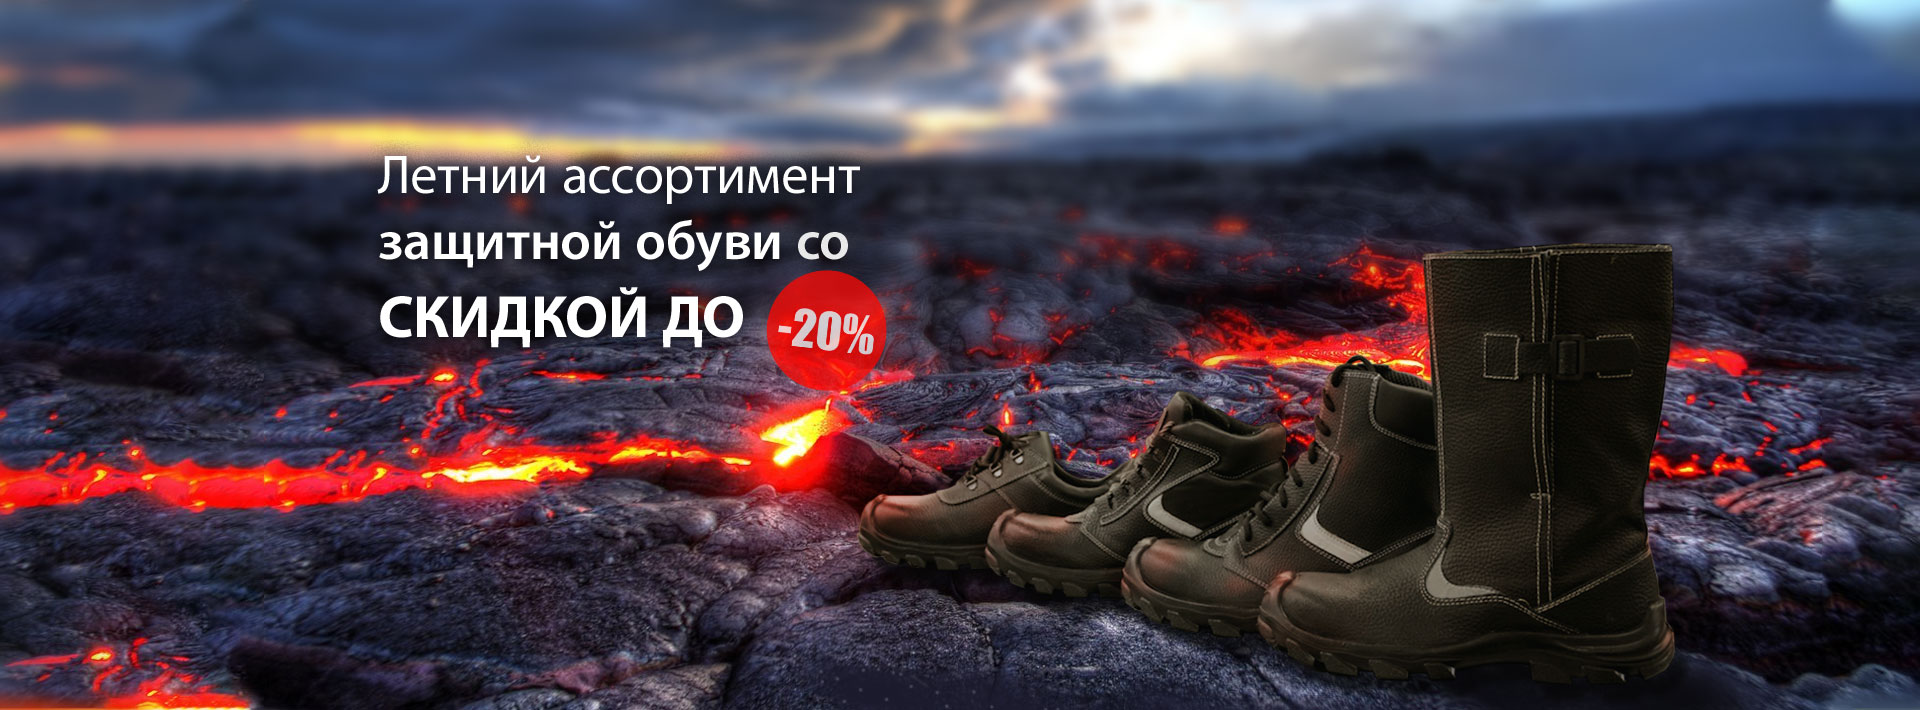 Летний ассортимент защитной обуви со скидкой до -20%